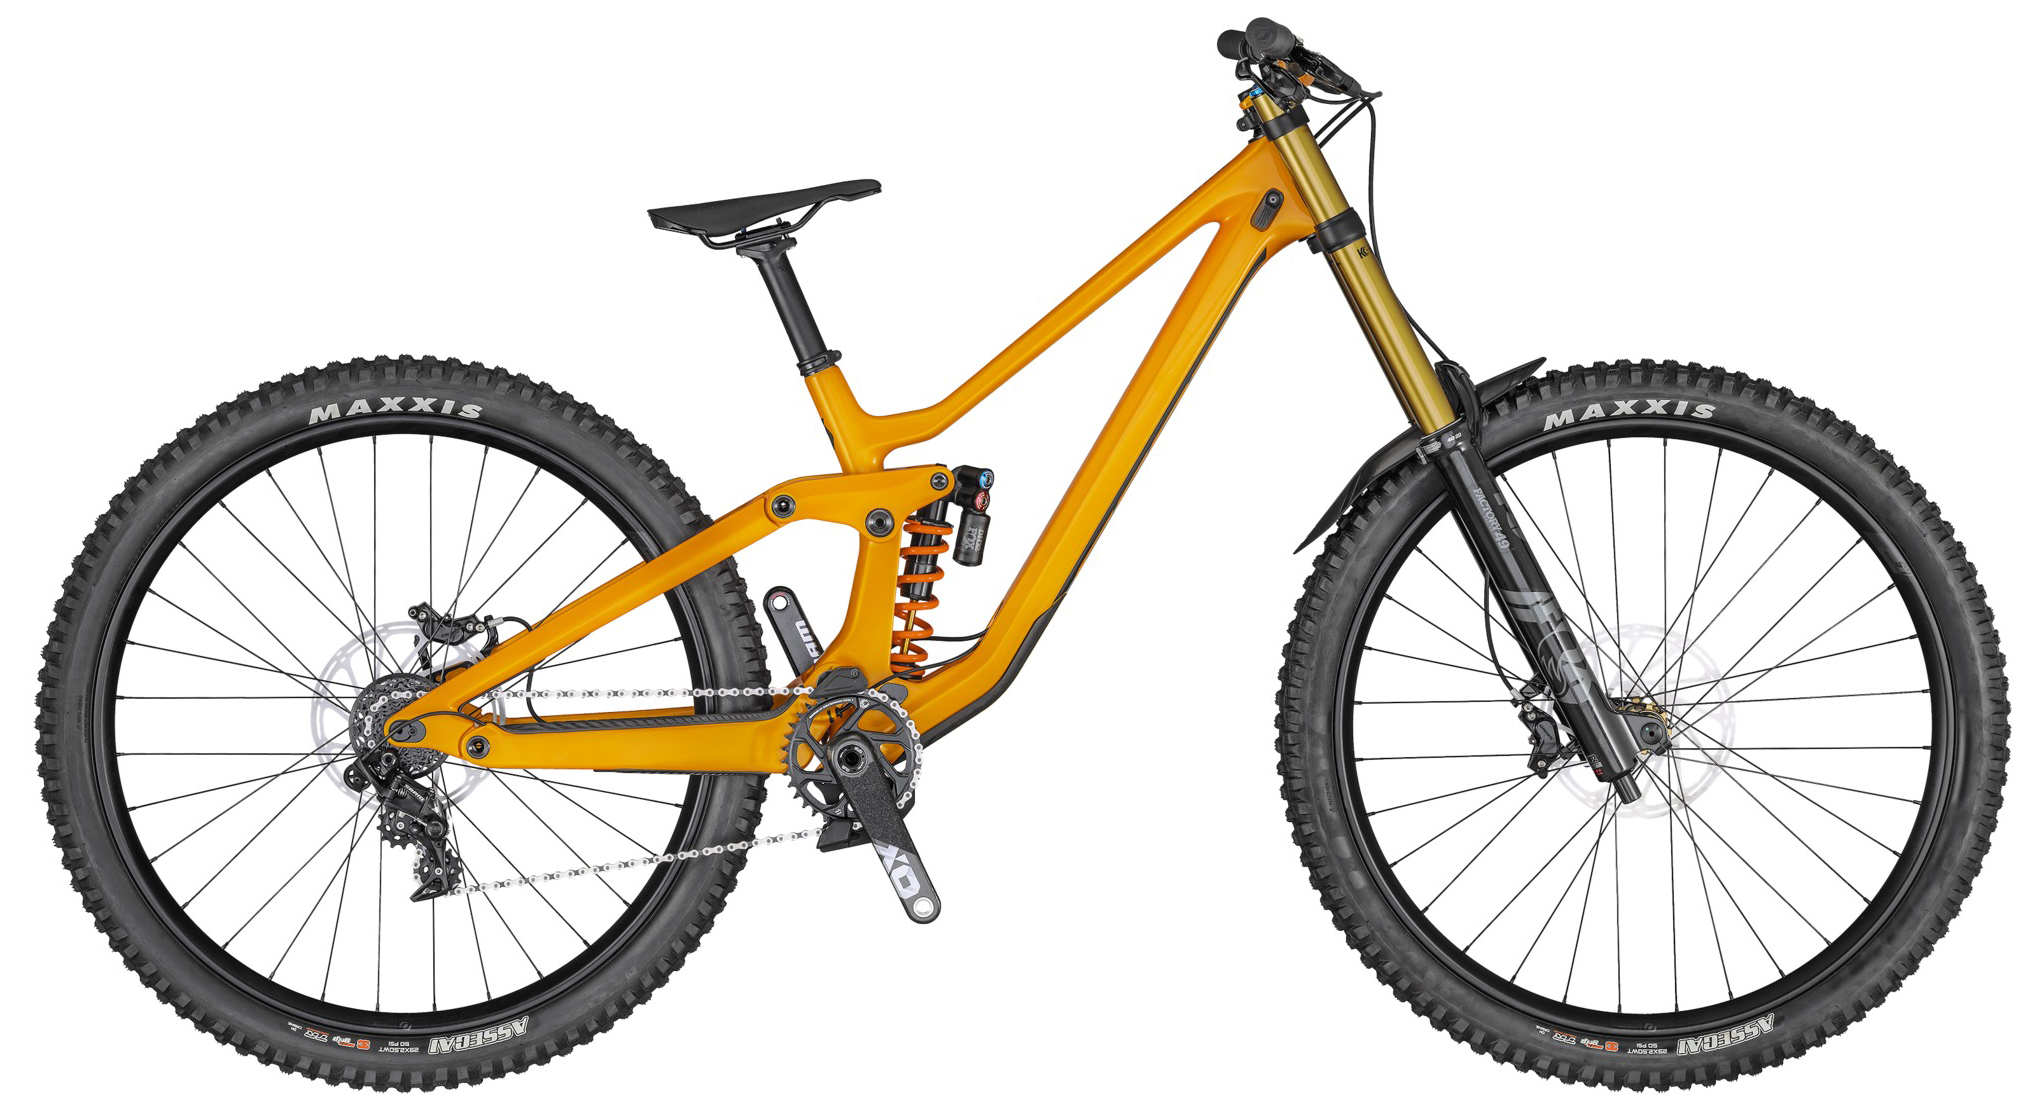  Отзывы о Двухподвесном велосипеде Scott Gambler 900 Tuned 2020